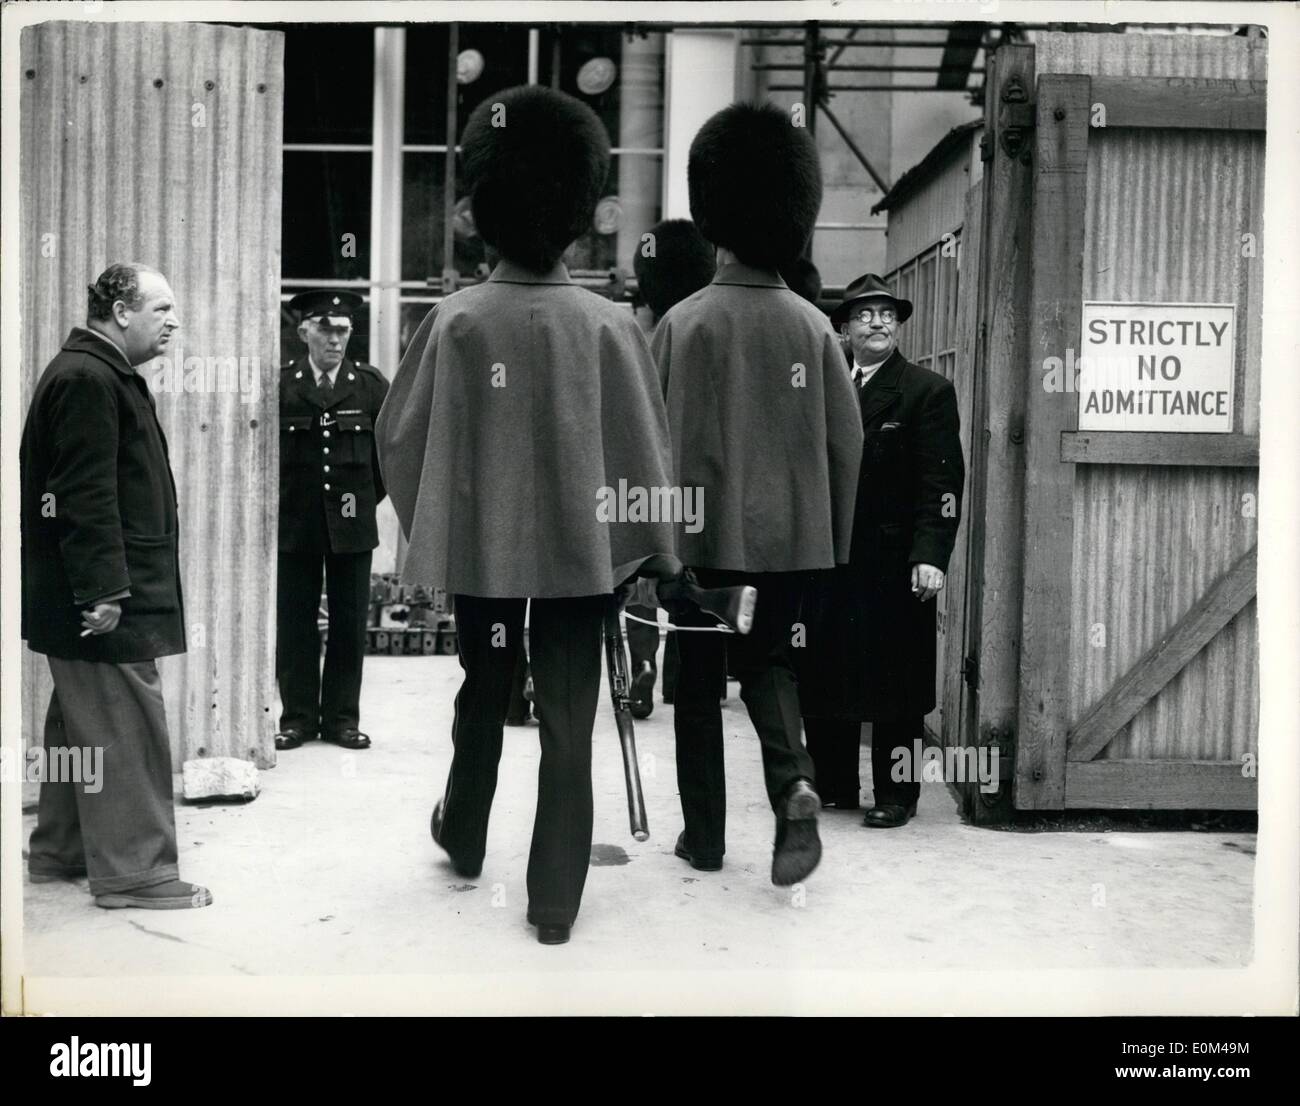 Mai 05, 1953 - La répétition de couronnement à l'abbaye. : Grenadier Guards, comme joyau d'escorte, arriver à l'abbaye de Westminster pour la répétition du Couronnement. Banque D'Images